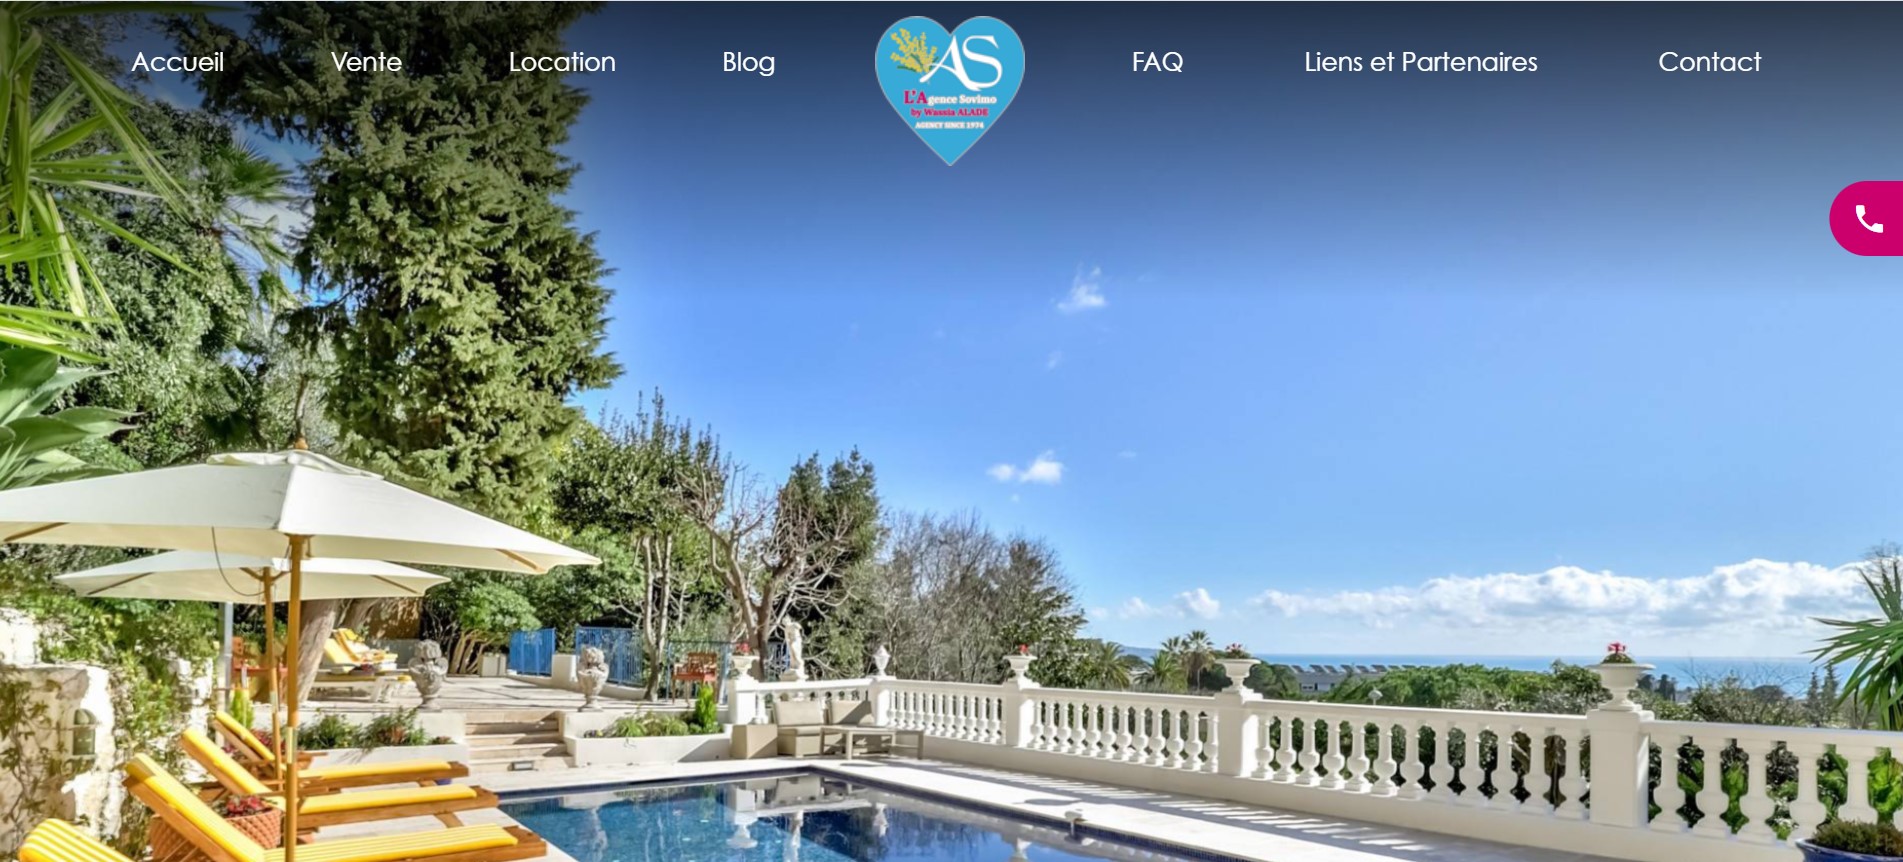 Création de site pour l'Agence Immobilière SOVIMO, Spécialiste de la vente en viager et location saisonnière à Cannes